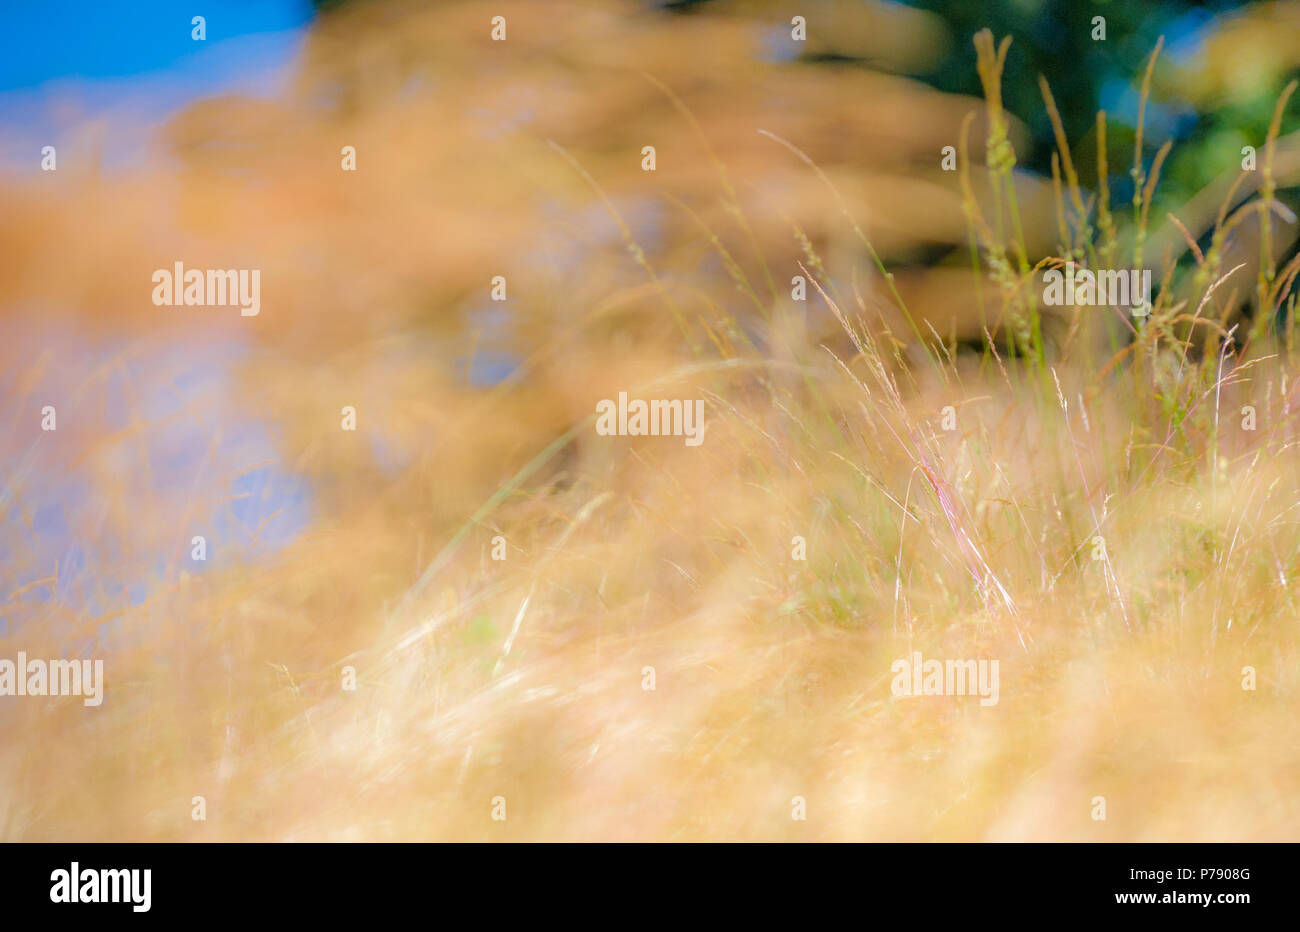 Des problèmes de mise au point des images d'herbes à un simular Monet peinture impressionniste. Banque D'Images